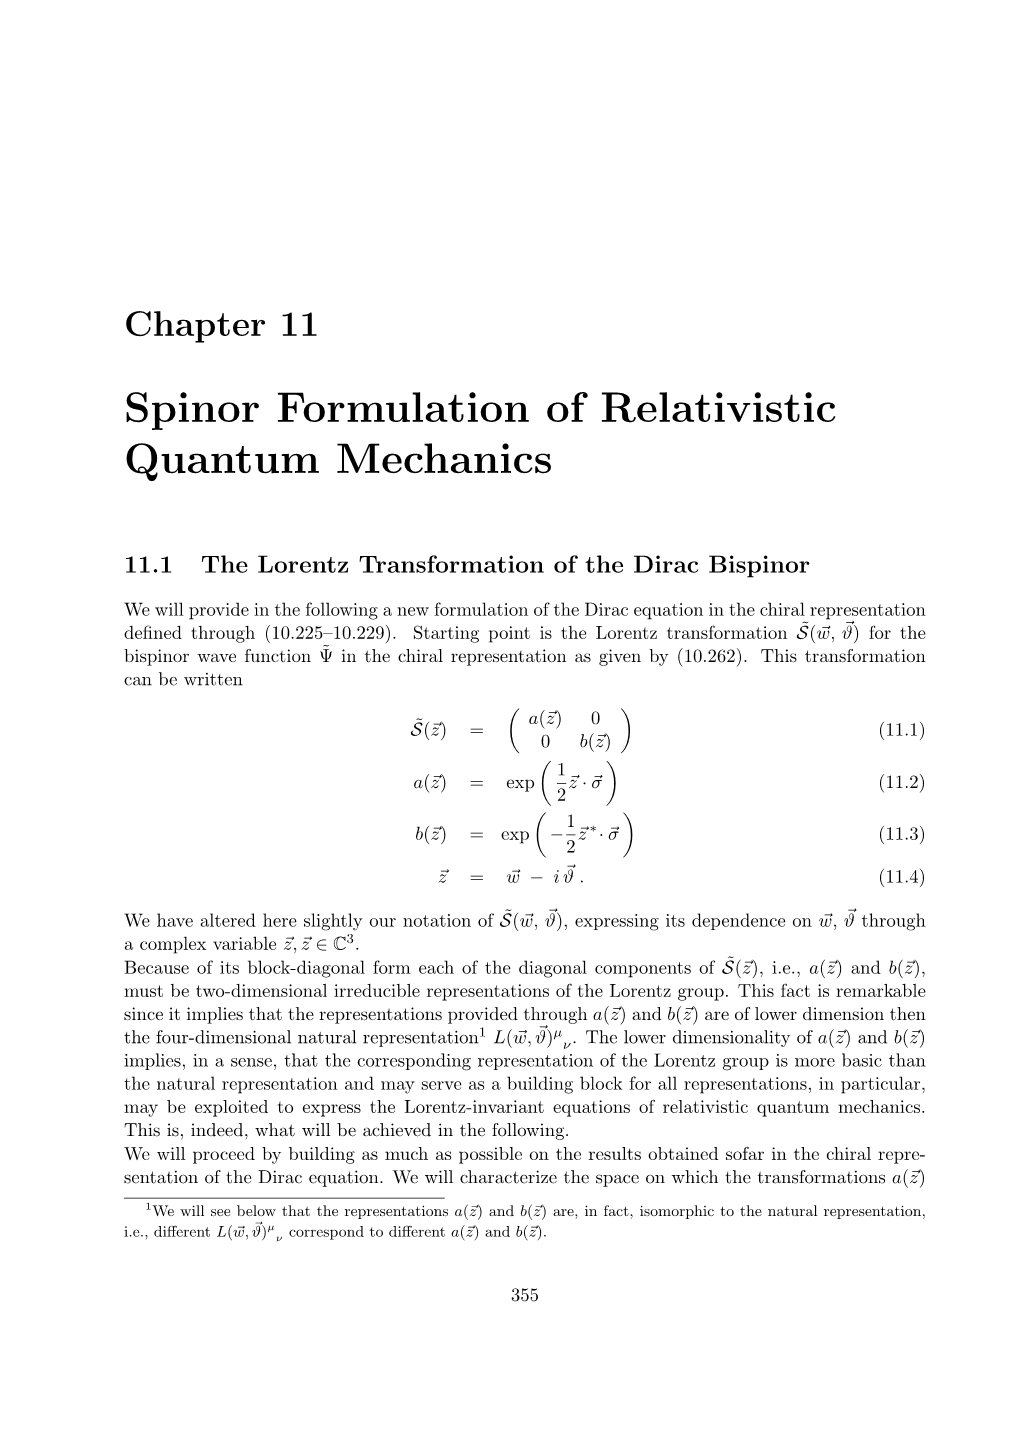 Spinor Formulation of Relativistic Quantum Mechanics